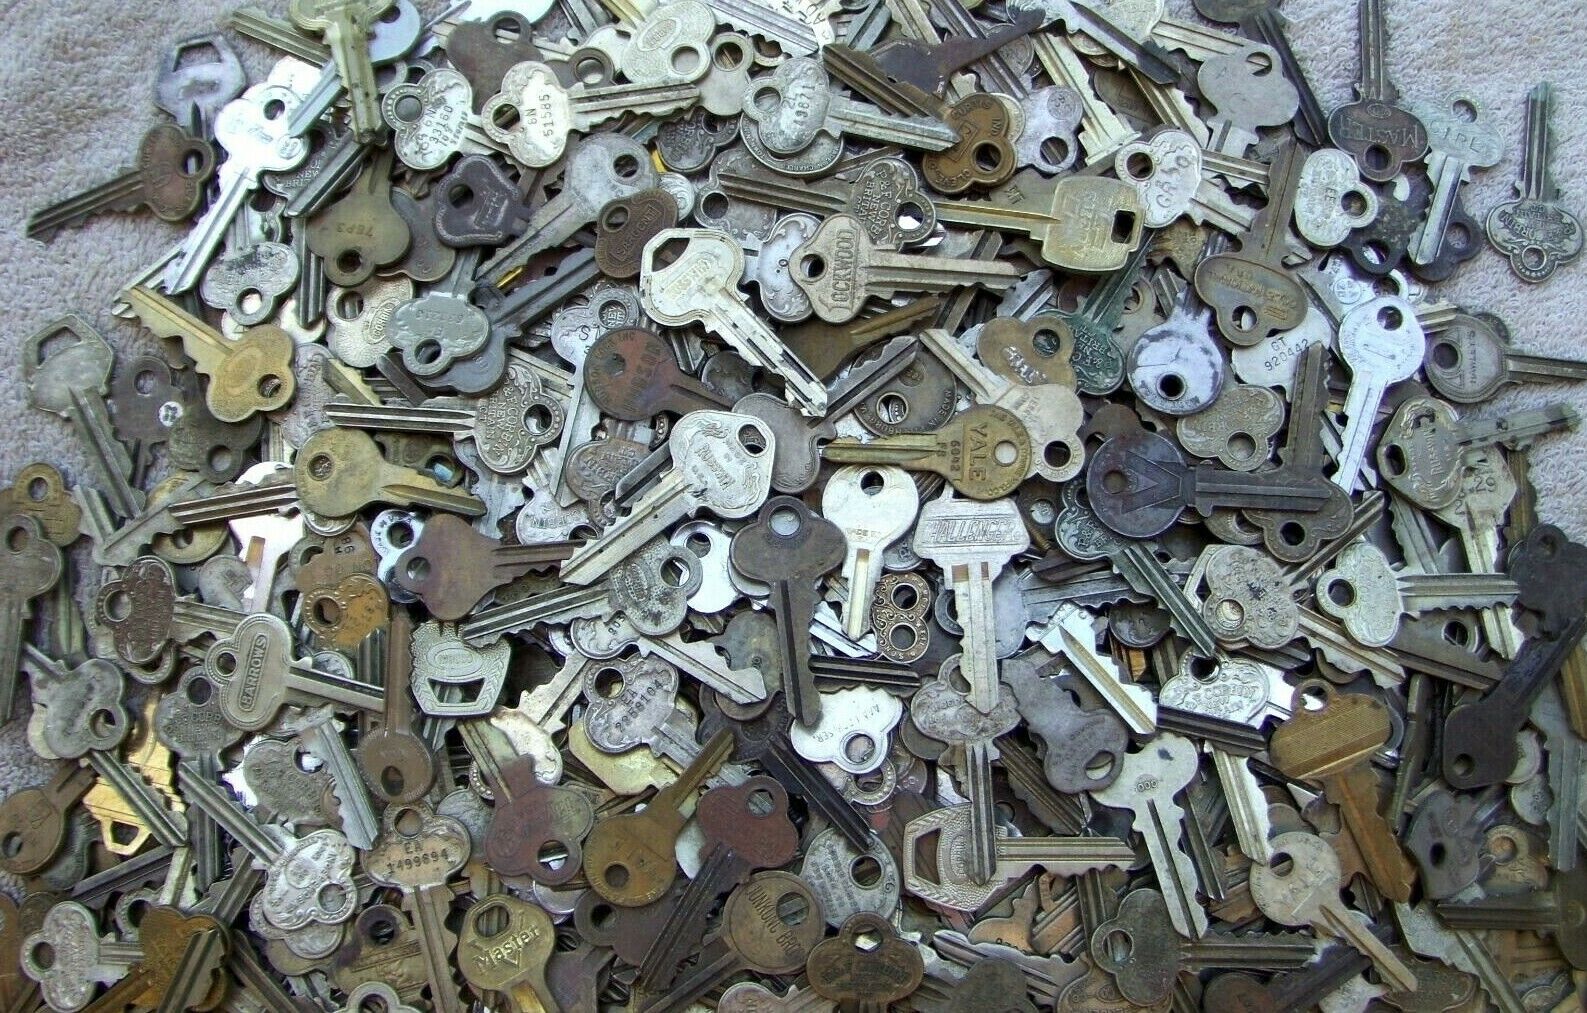 Lot of (20) old  - vintage - antique keys